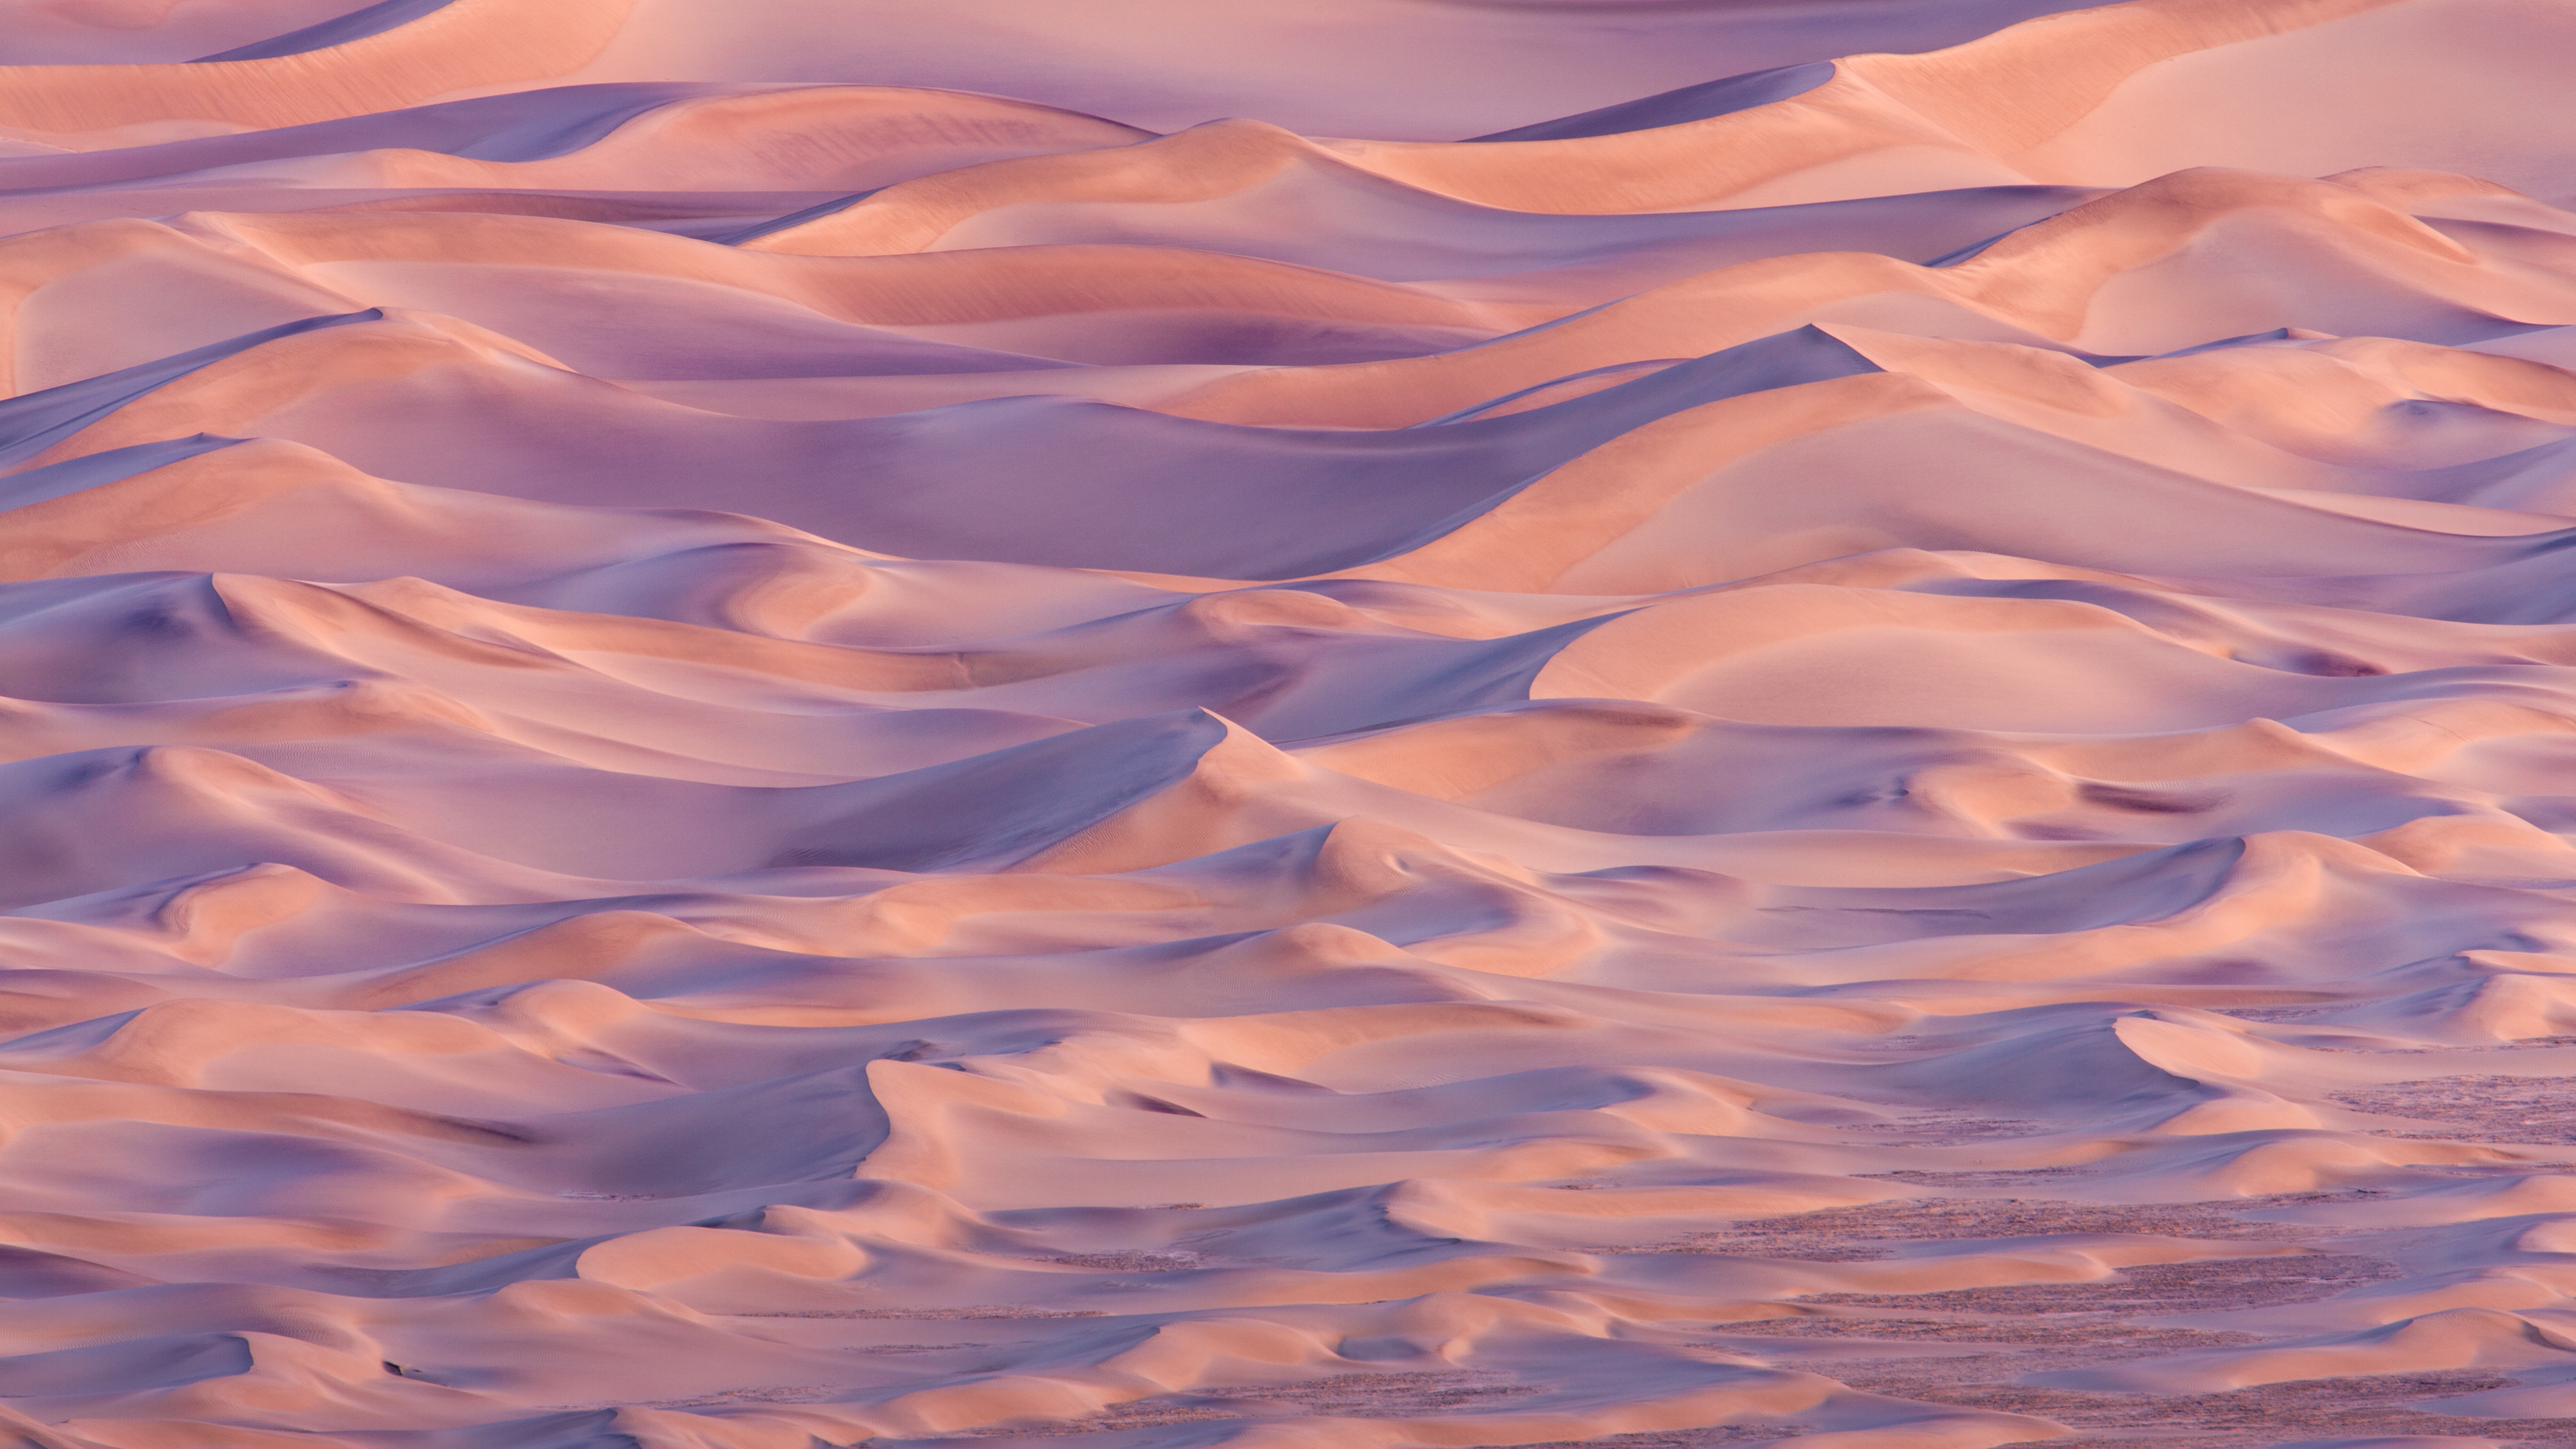 Image: Desert, dunes, sand